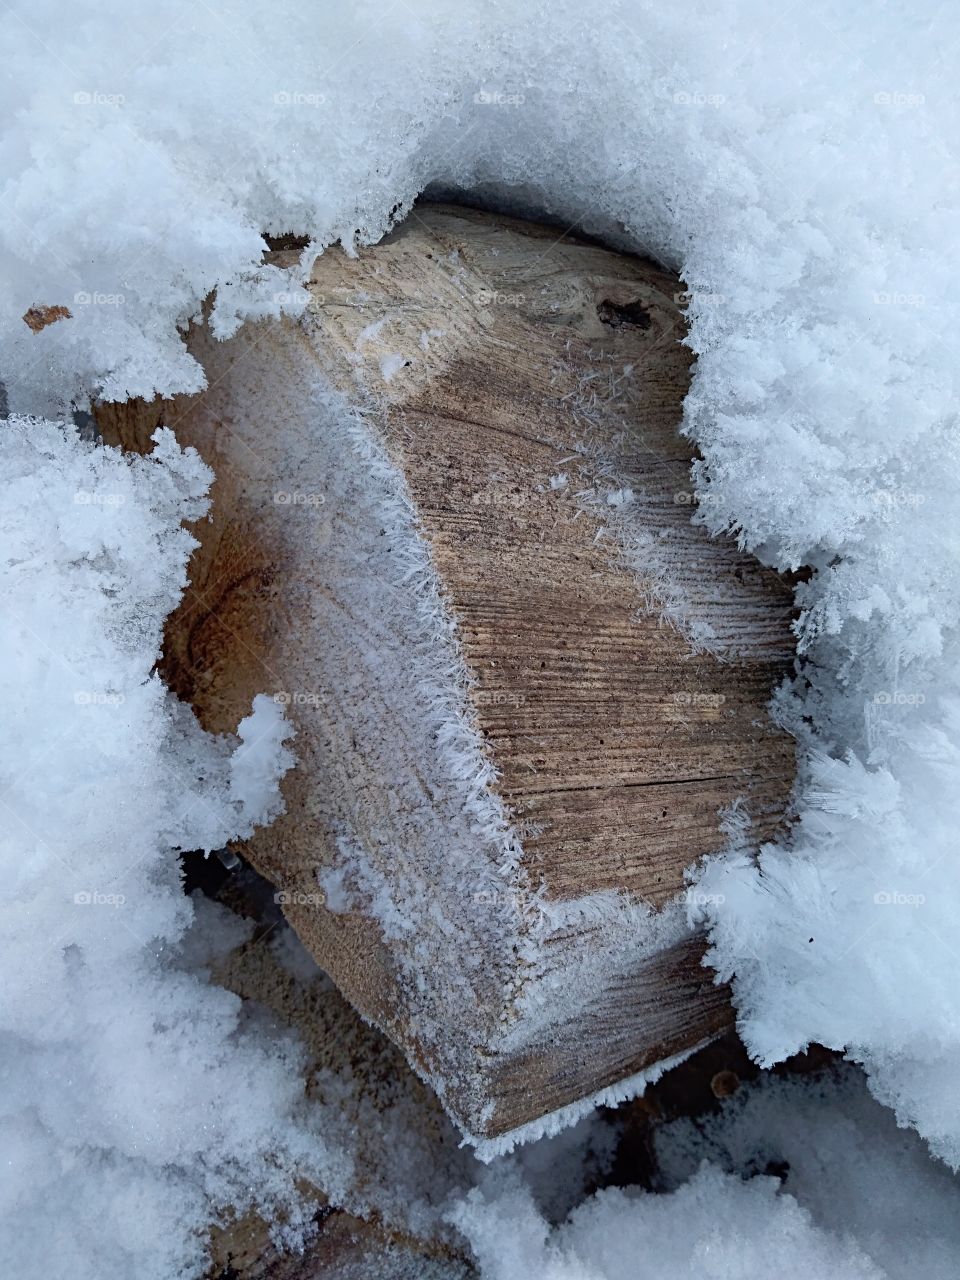 Frozen piece of wood